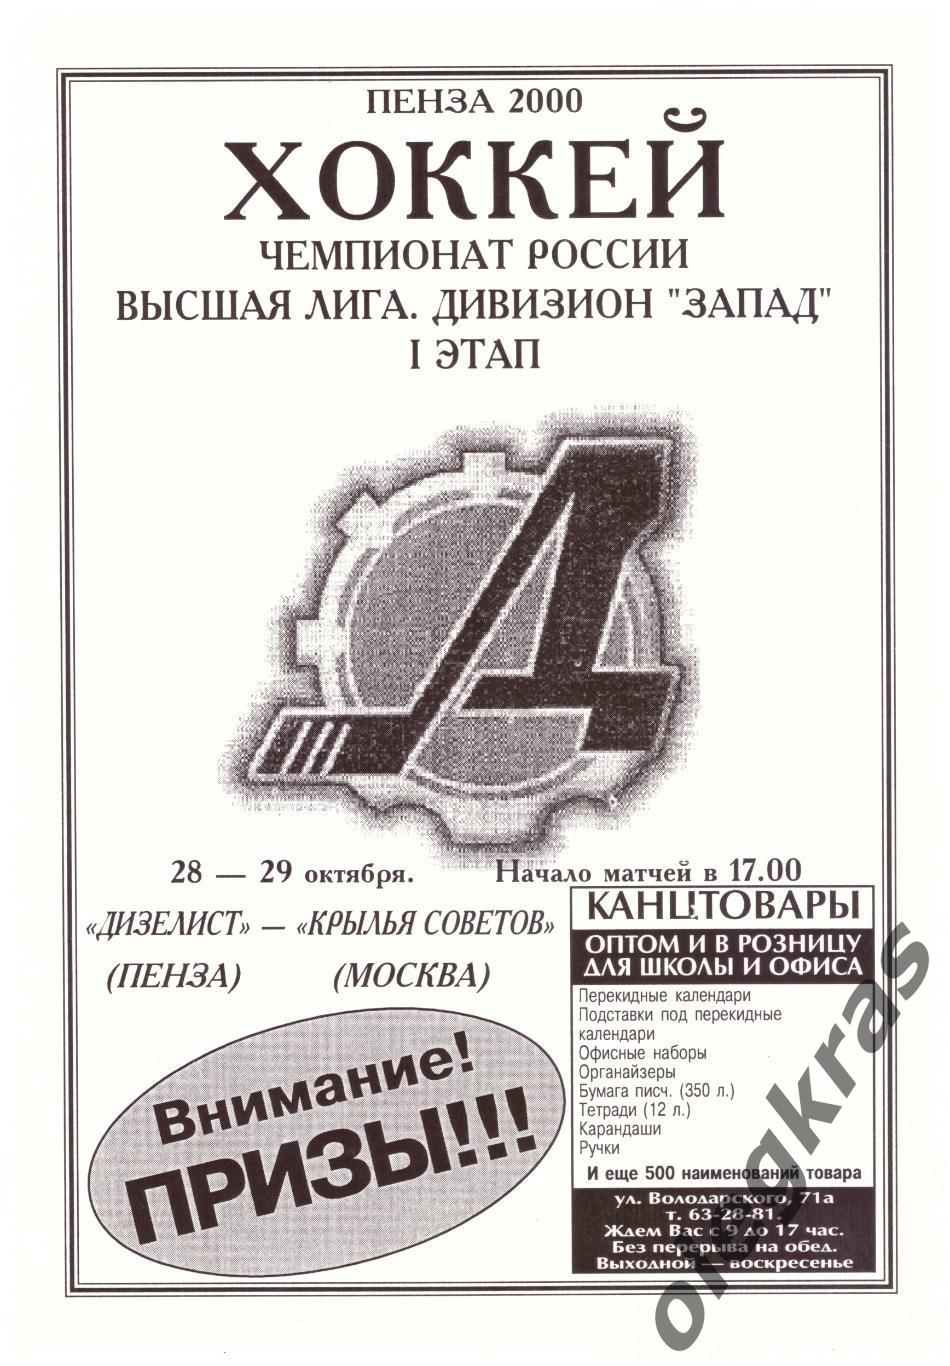 Дизелист(Пенза) - Крылья Советов(Москва) - 28-29 октября 2000 года.